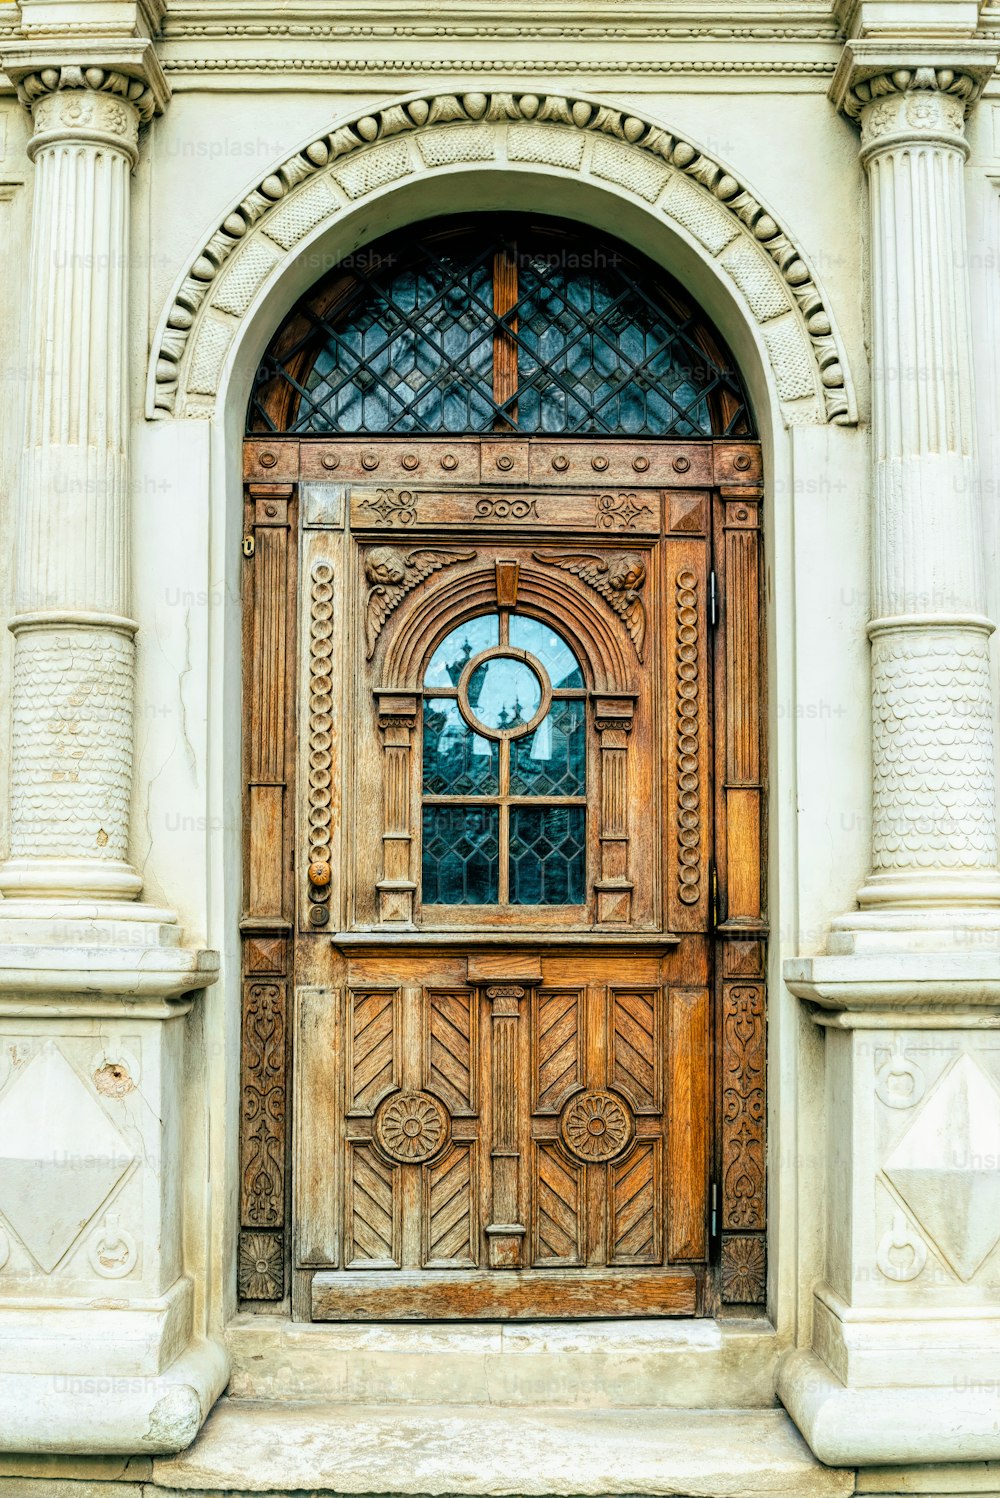 Ancienne porte en bois d’une maison dans le quartier historique de la ville. Fond et texture du bois poli brun sculpté